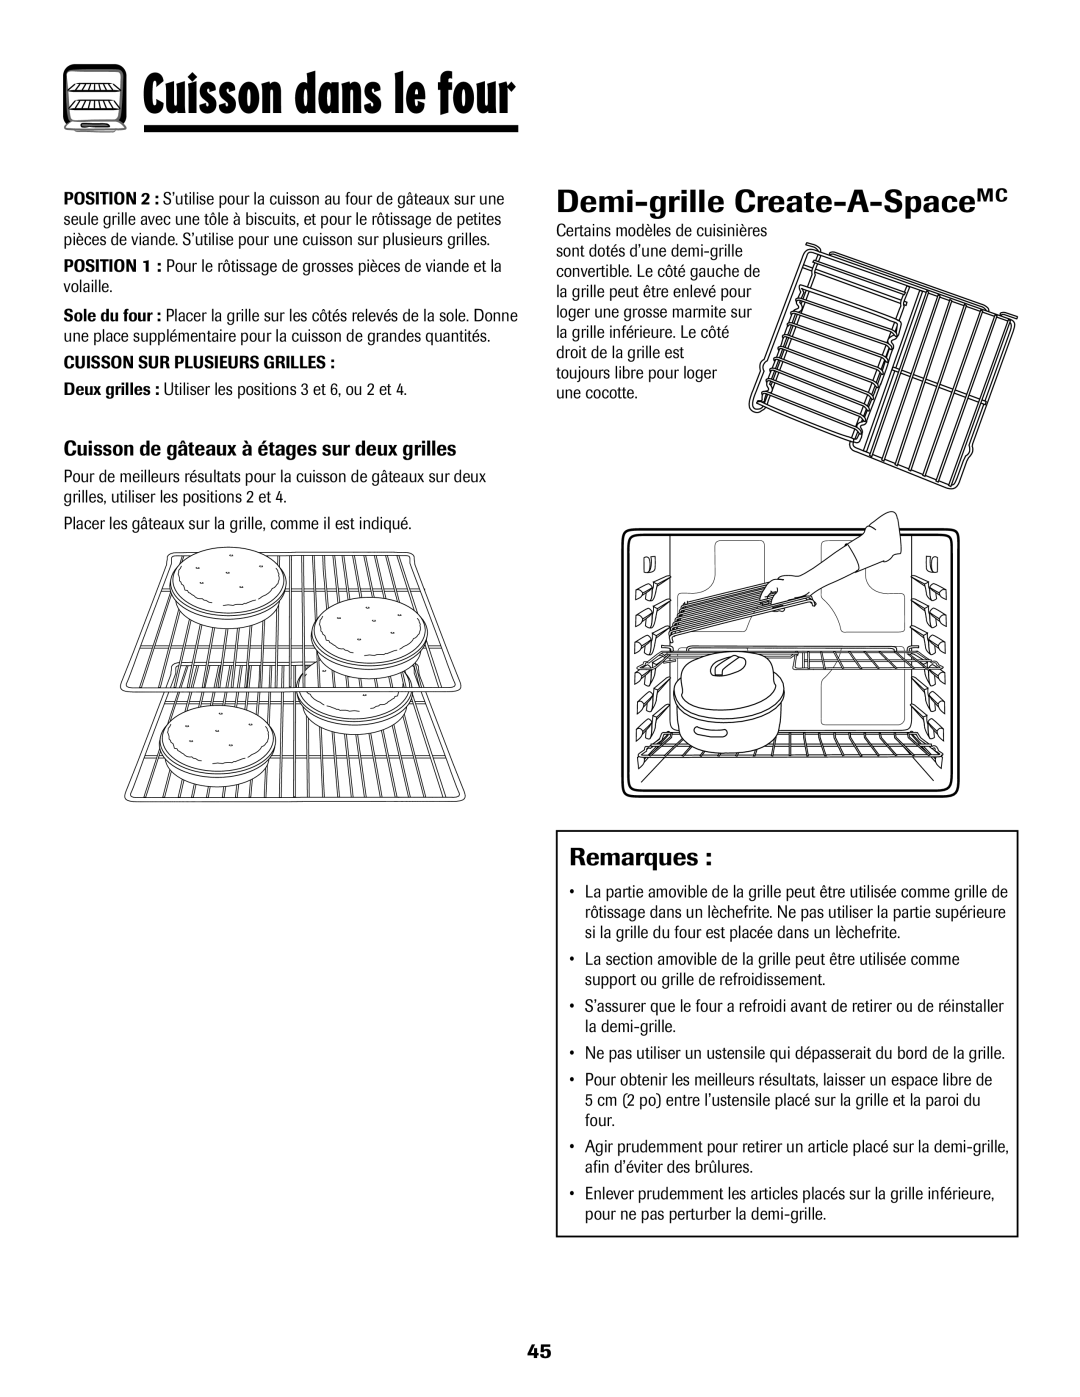 Maytag 700 Demi-grille Create-A-SpaceMC, Cuisson de gâteaux à étages sur deux grilles, Cuisson dans le four, Remarques 